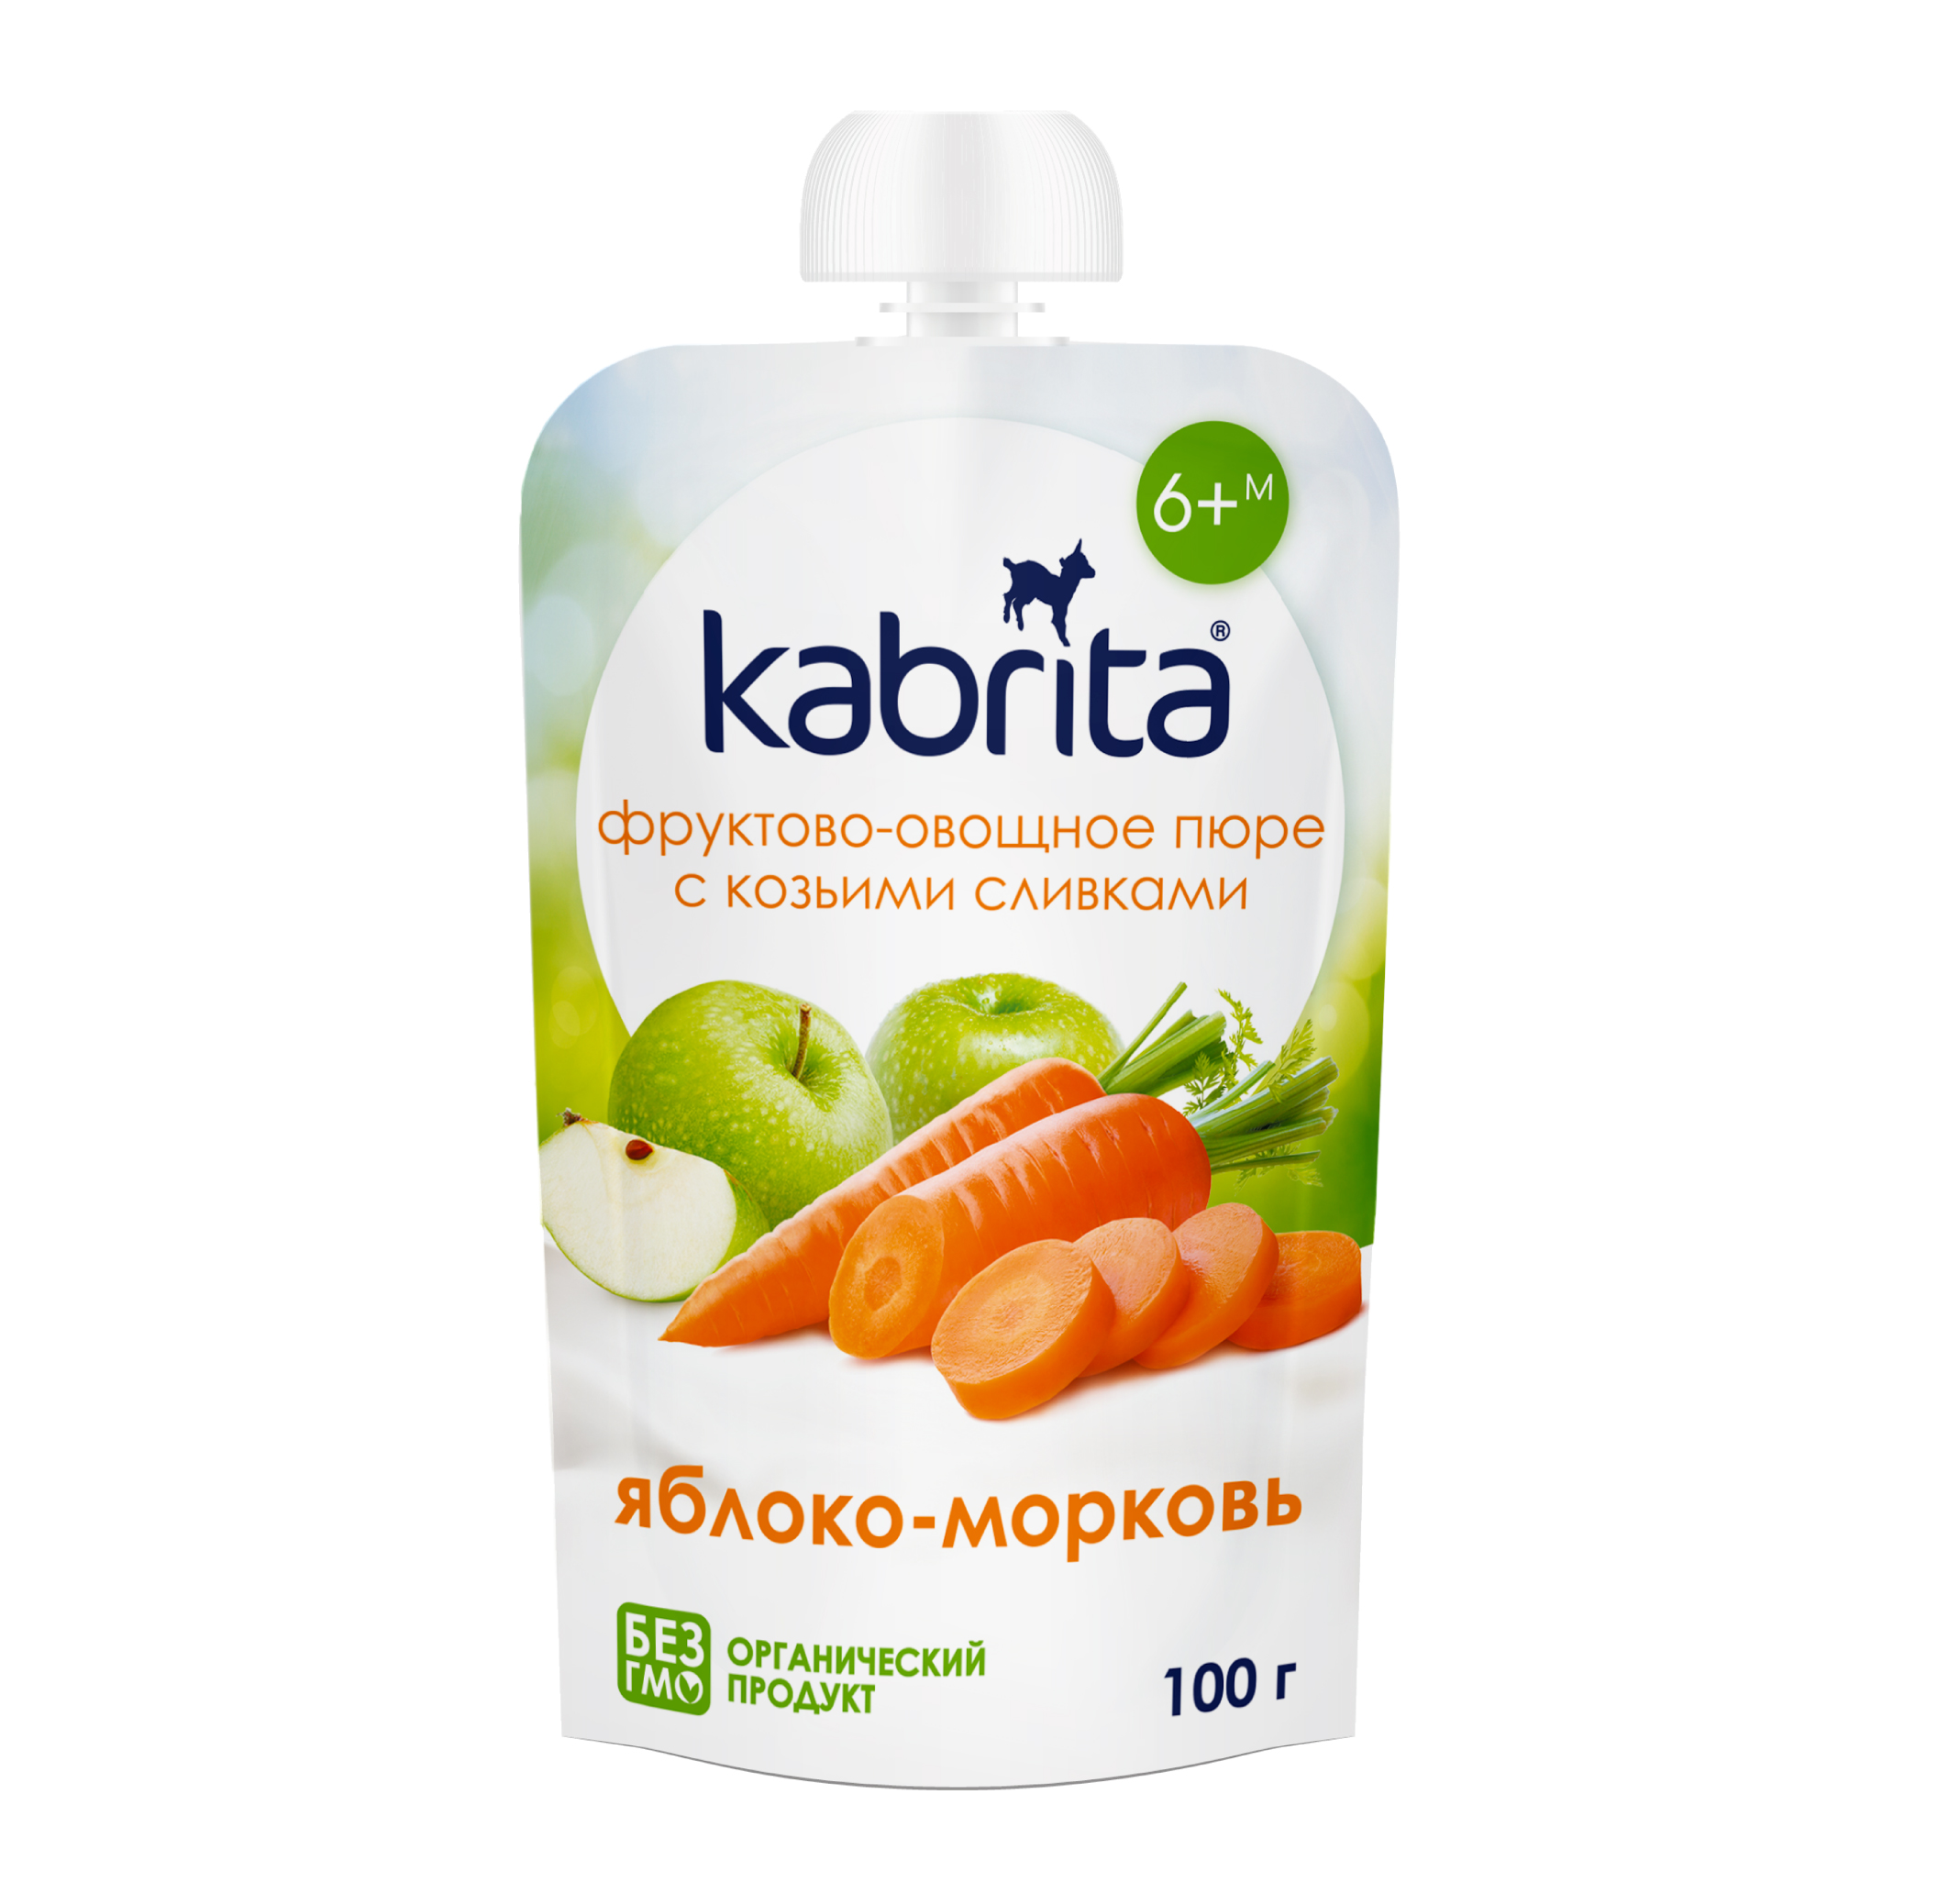 Фруктово-овощное пюре Kabrita Яблоко-морковь с козьими сливками, с 6 месяцев, 100 г фруктовое пюре kabrita банан с печеньем с козьими сливками с 8 месяцев 100 г